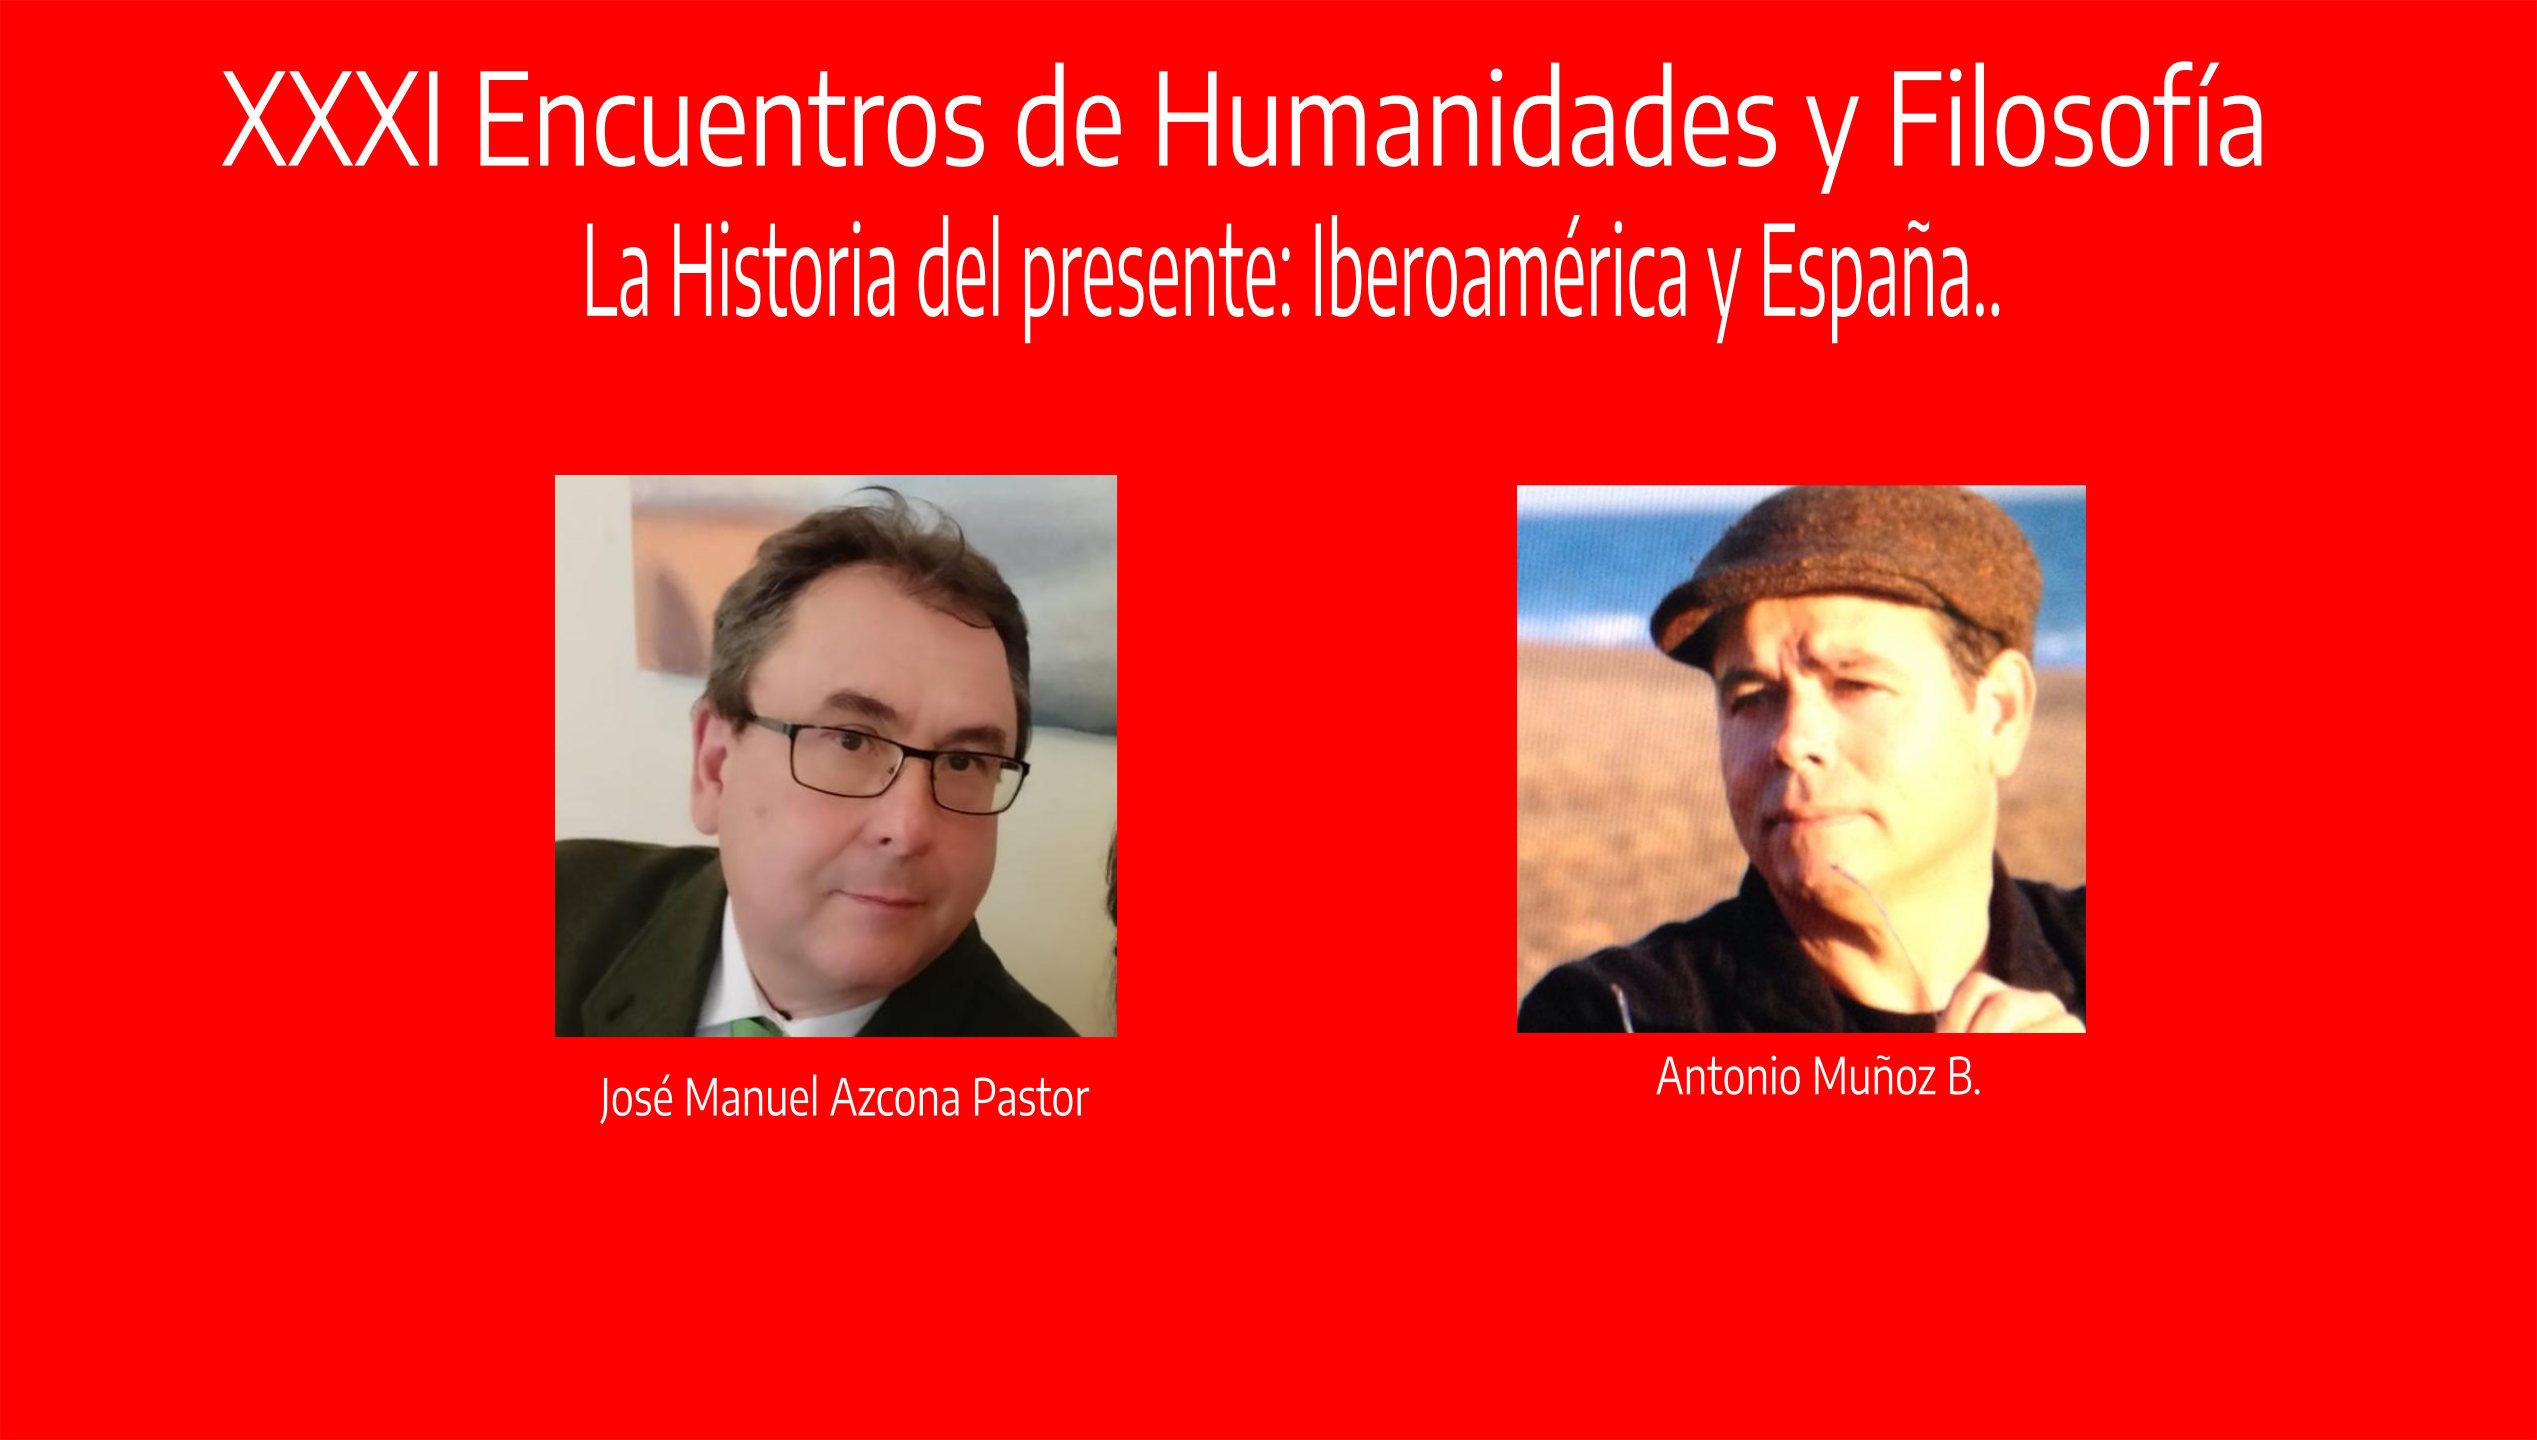 XXXI Encuentros de Humanidades y Filosfofía,  La Historia del presente: Iberoamérica y España. José Manuel Azcona Pastor.